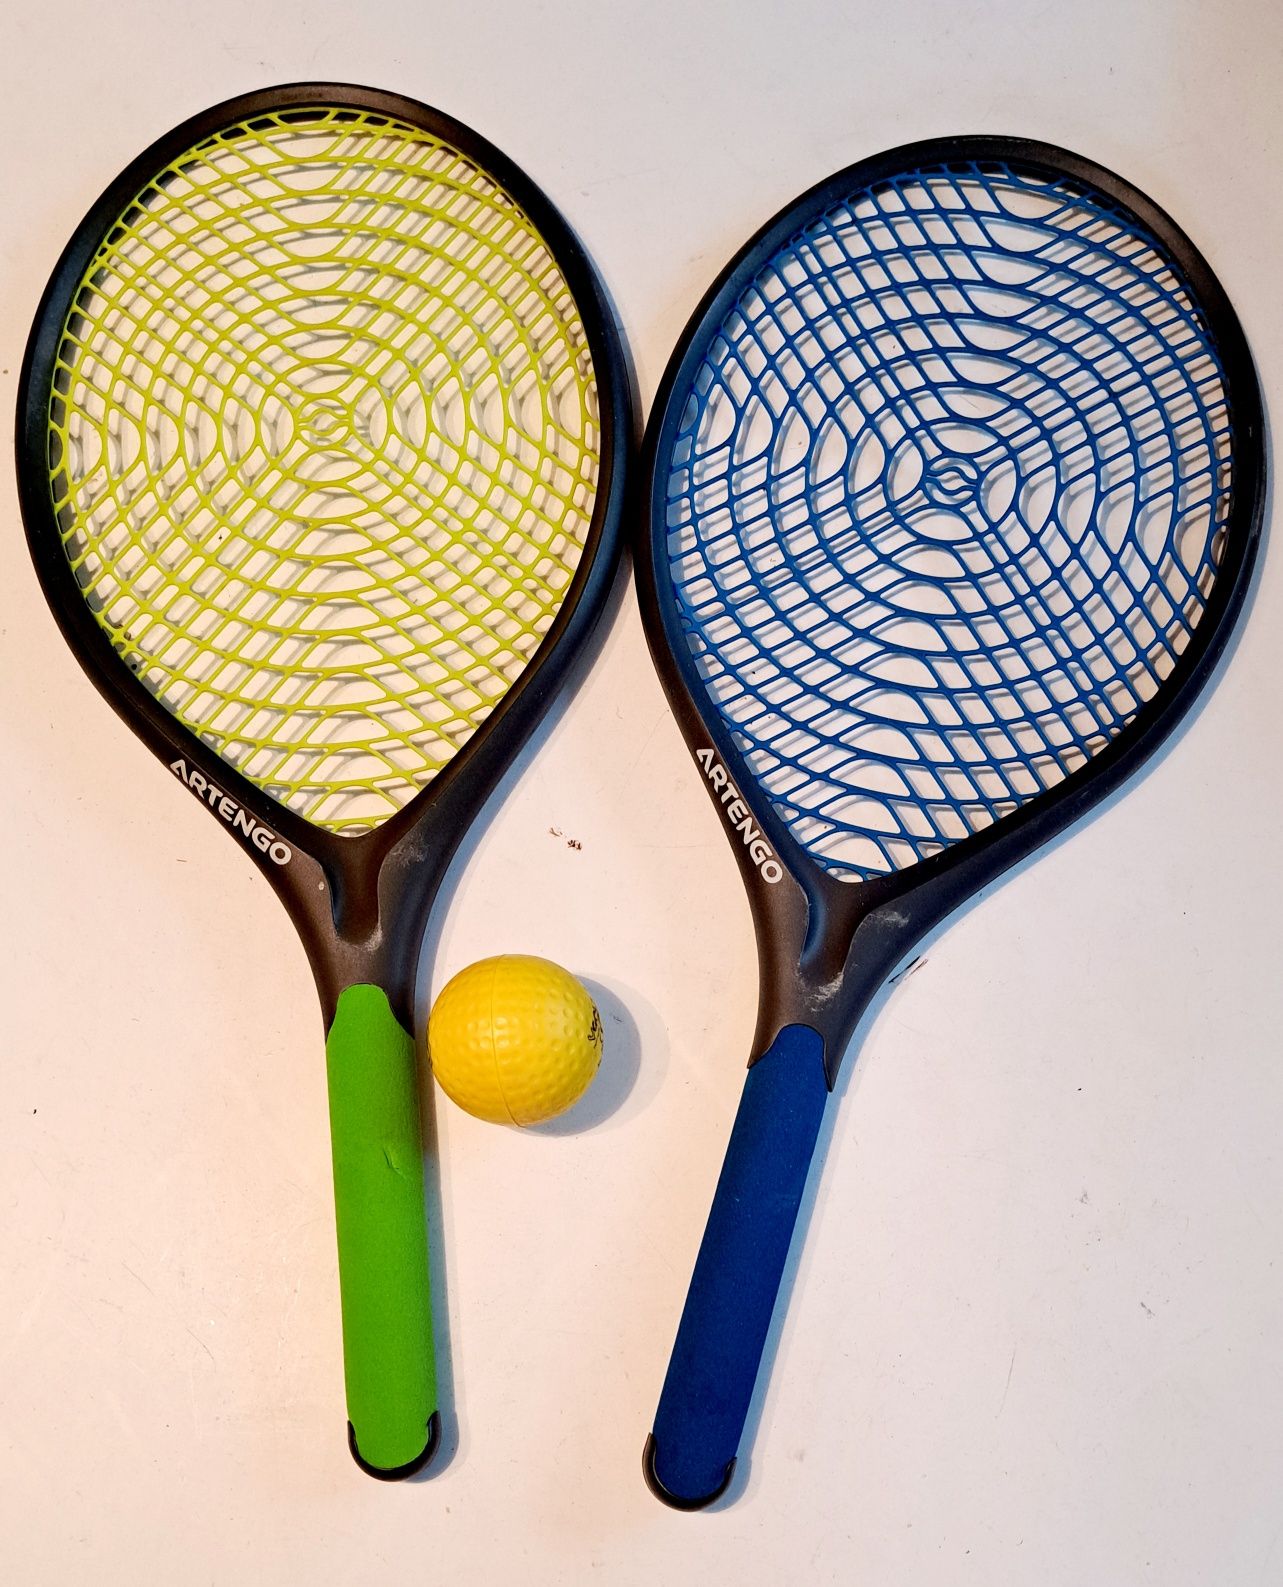 zestaw tenis funnyten: 2 rakiety i 1 piłka decathlon artengo rakietki